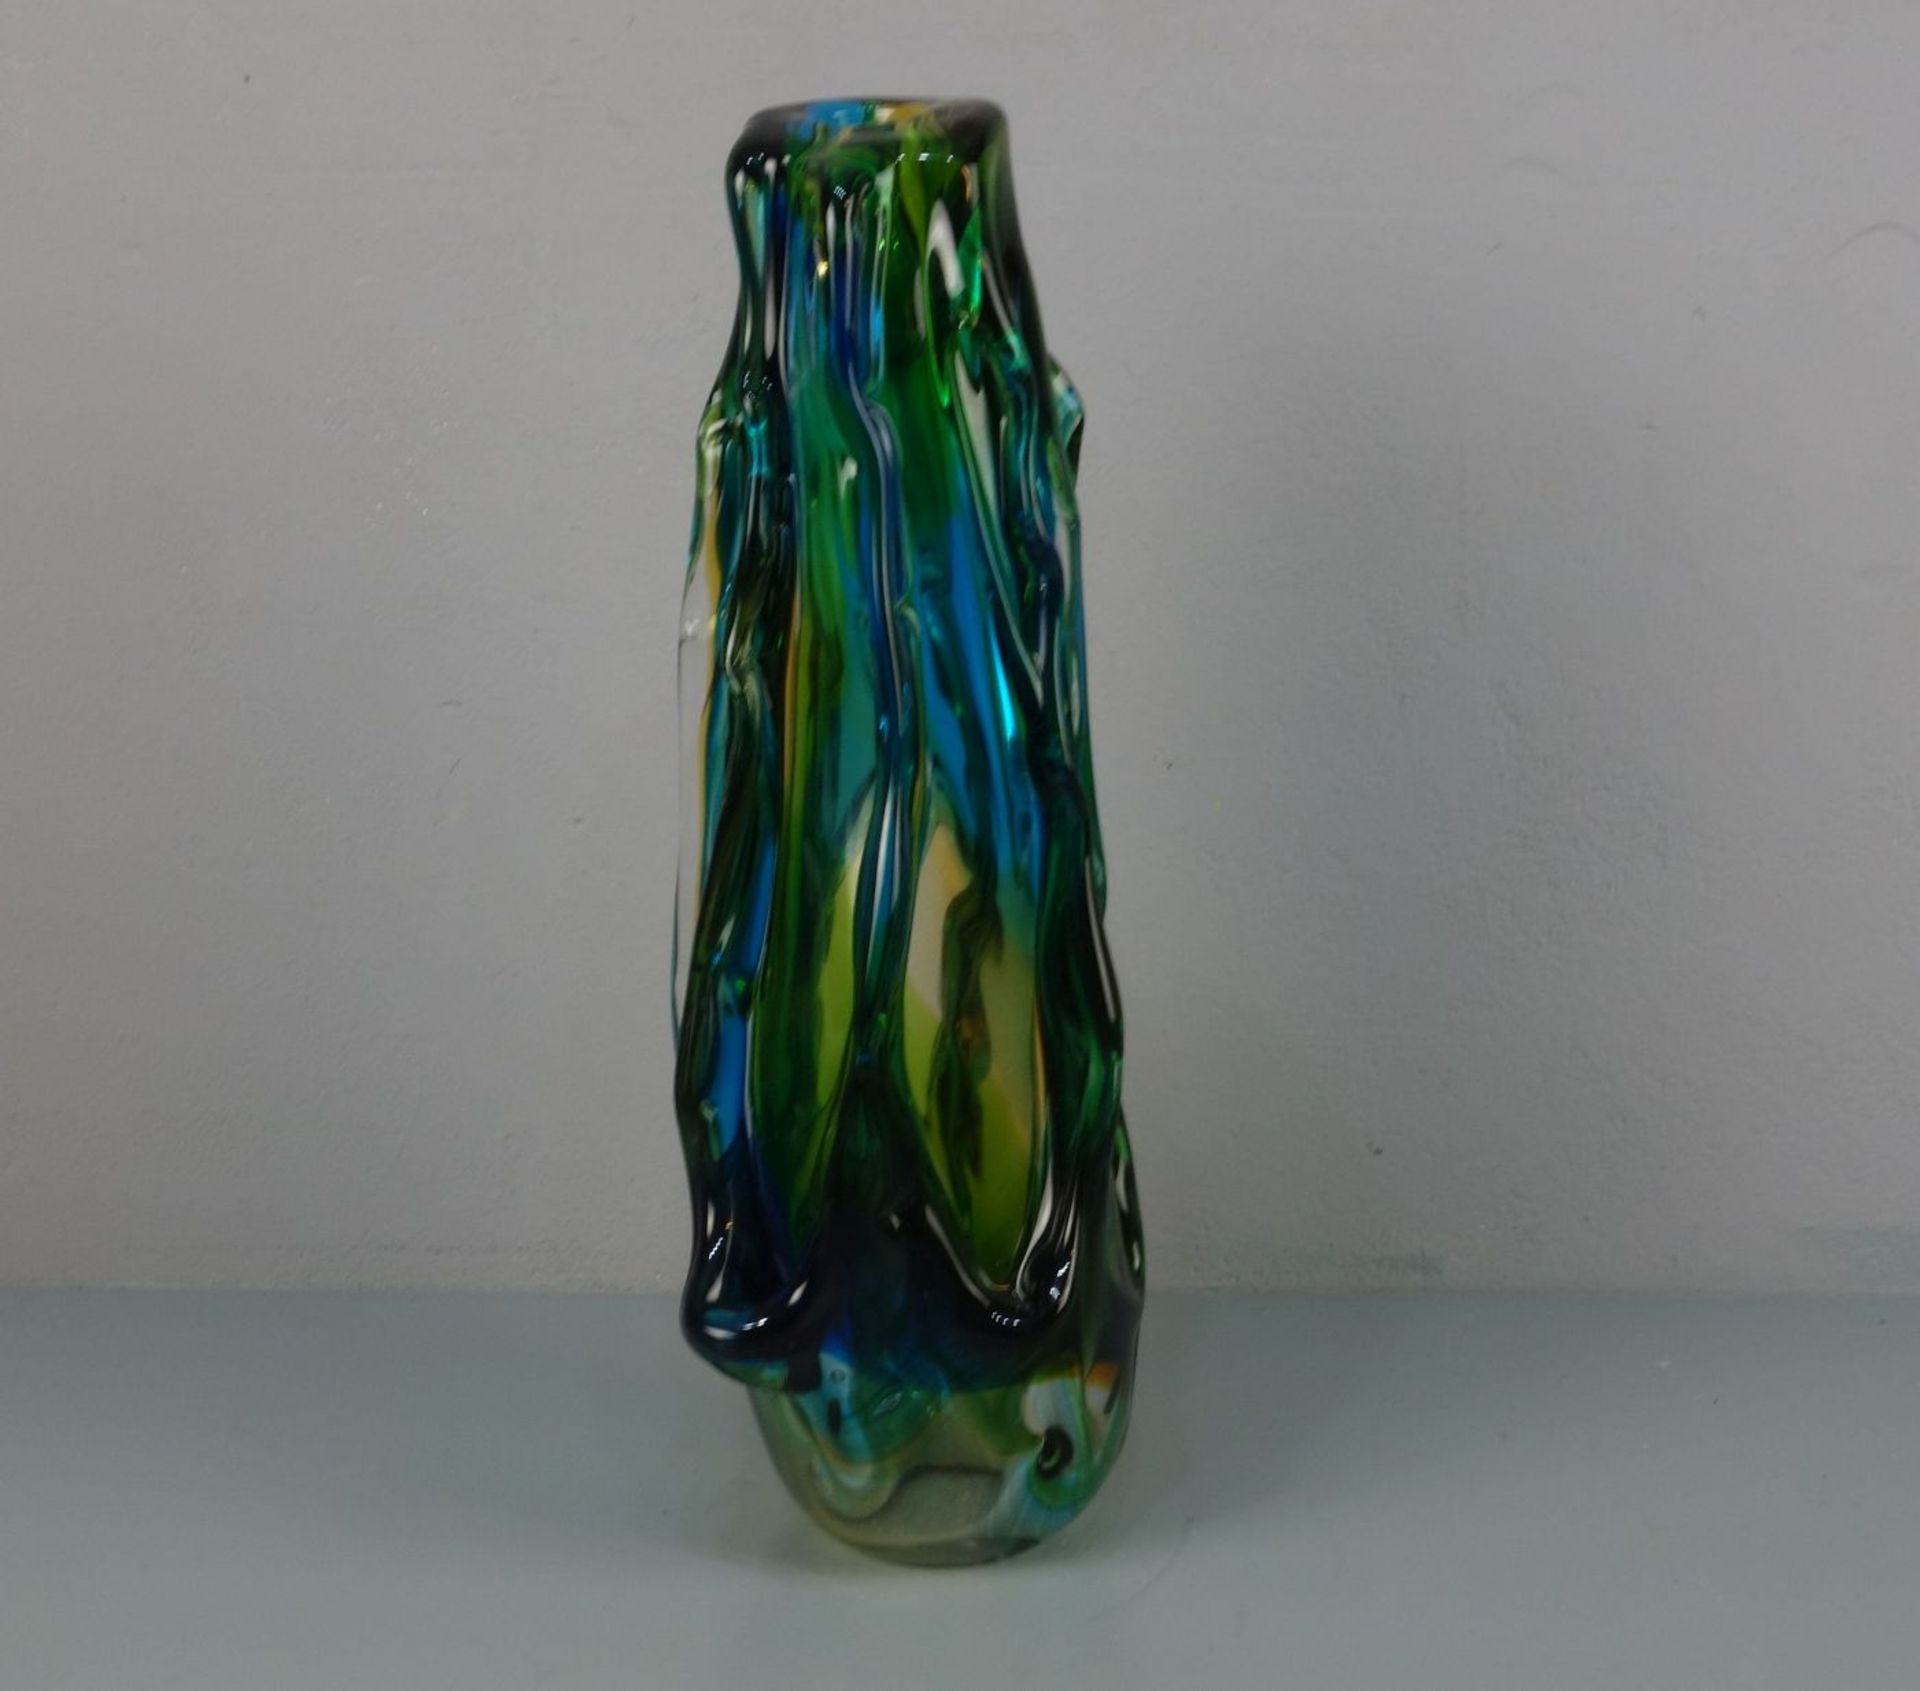 MURANO - GLASVASE, gerippte Keulenform. Dickwandiges farbloses Glas, grün, gelb und blau - Image 2 of 4